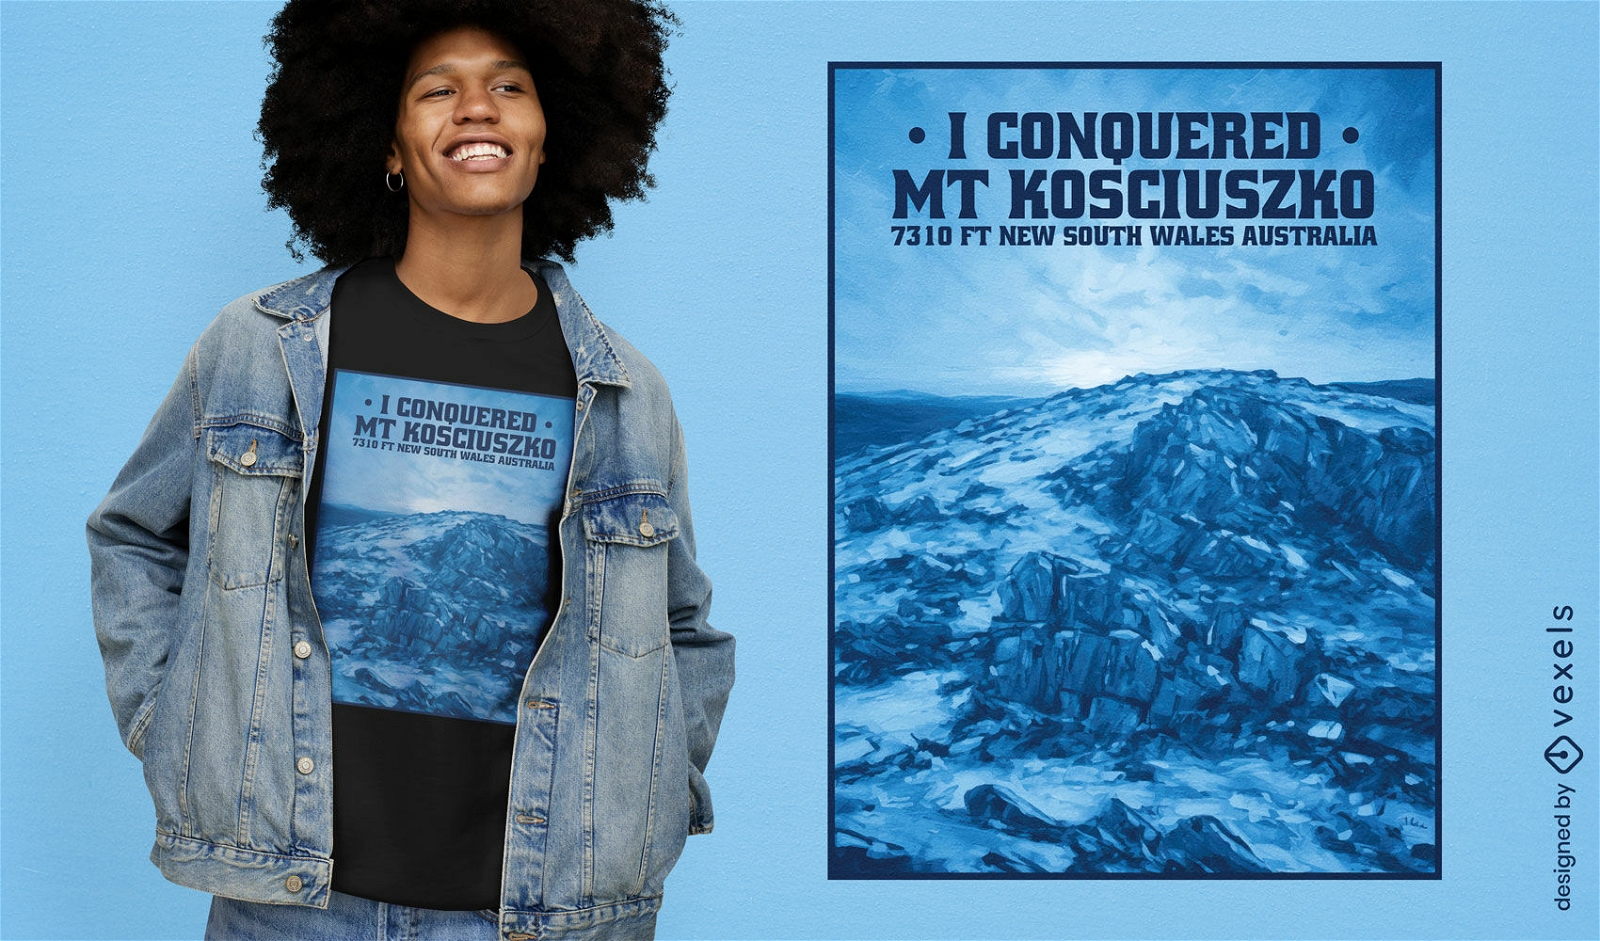 Diseño de camiseta del monte Kosciuszko conquistado